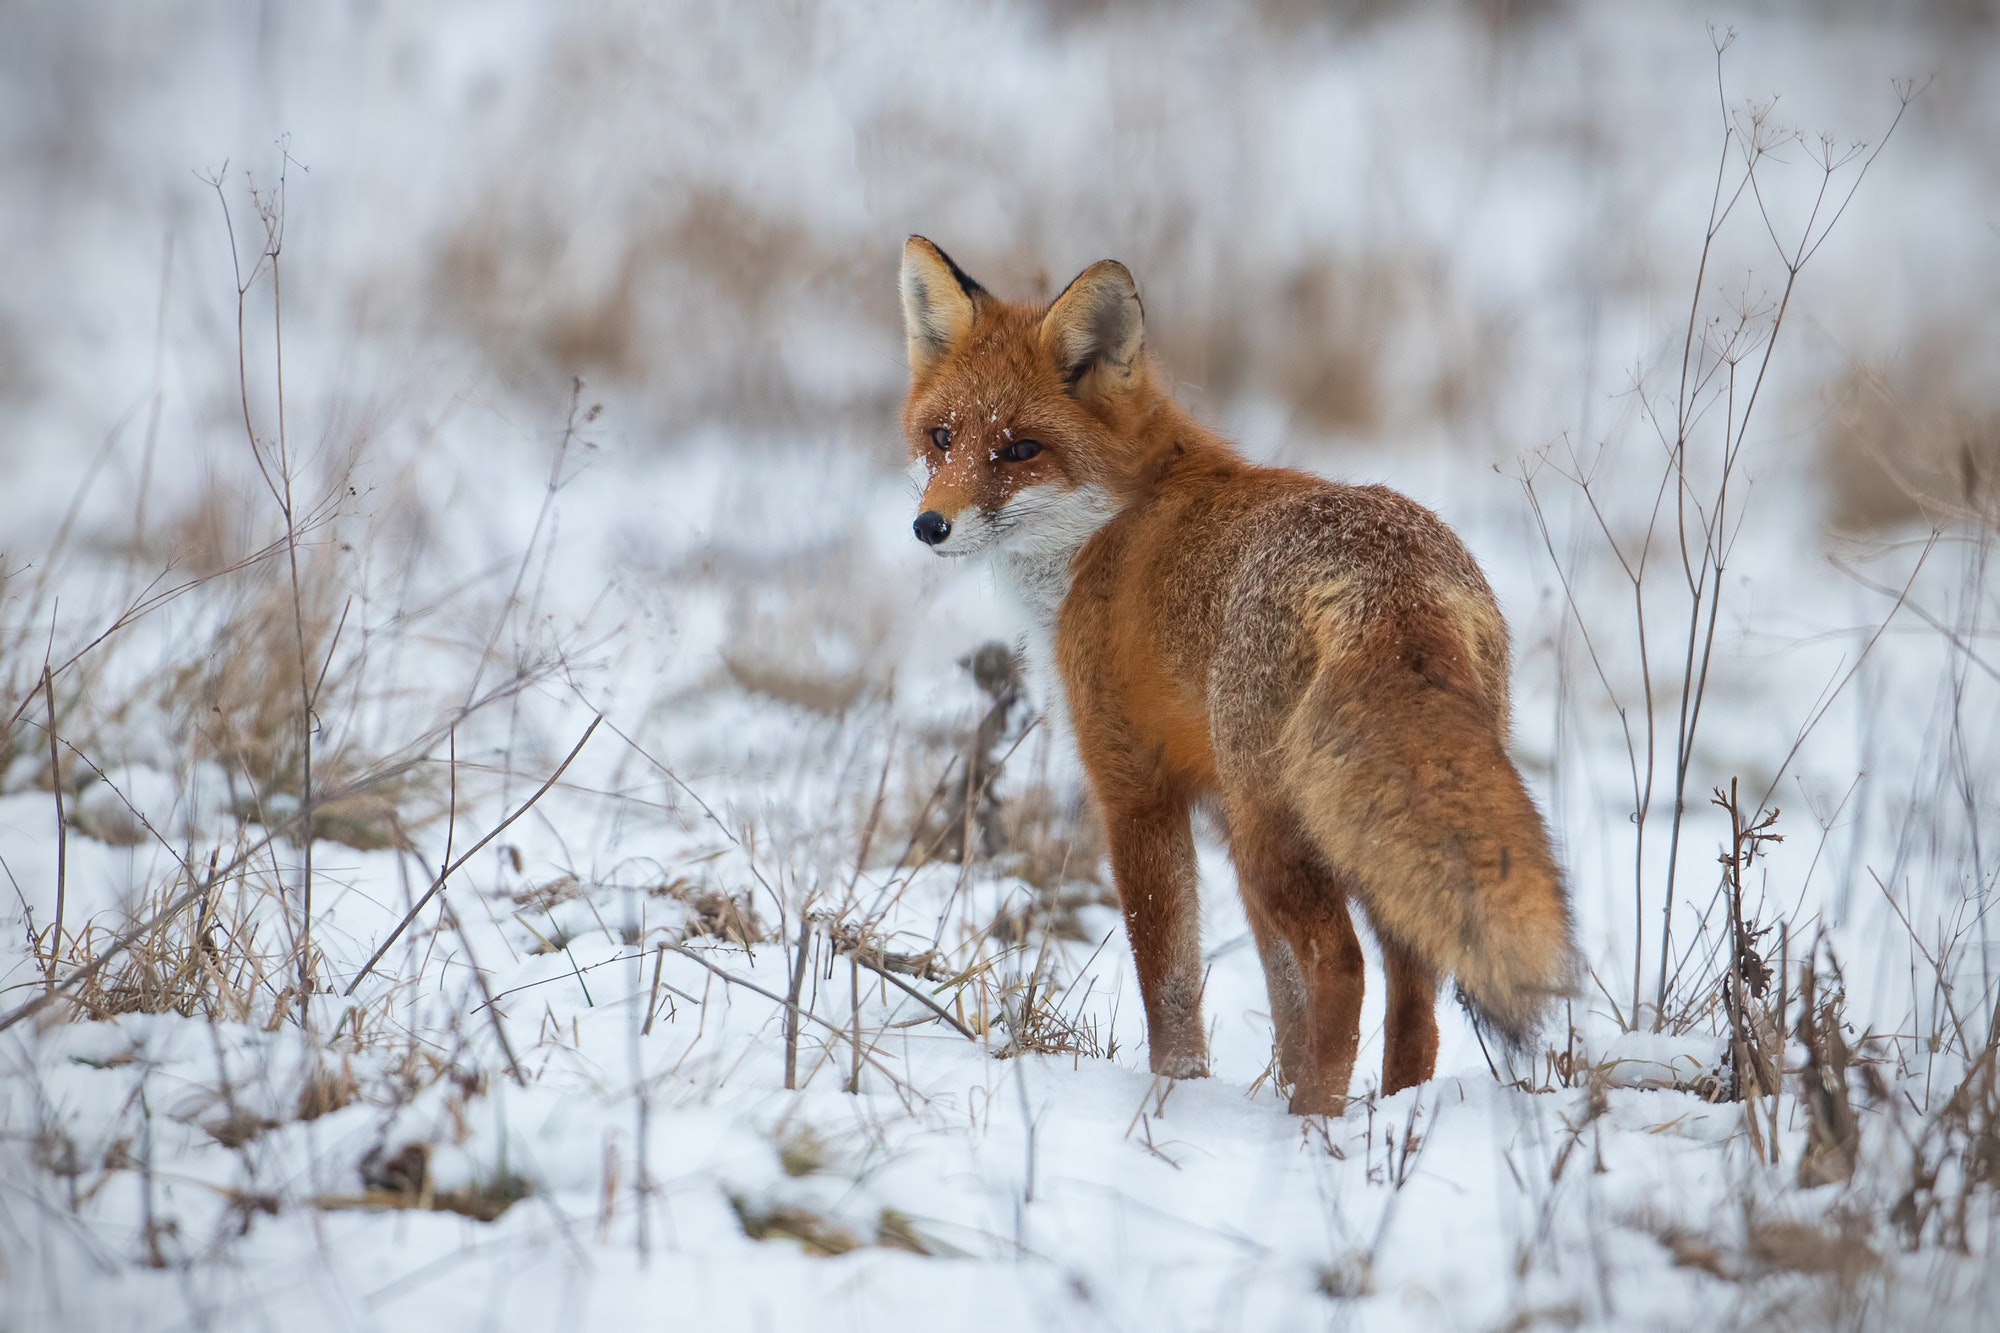 Red fox, vulpes vulpes, on snow in winter